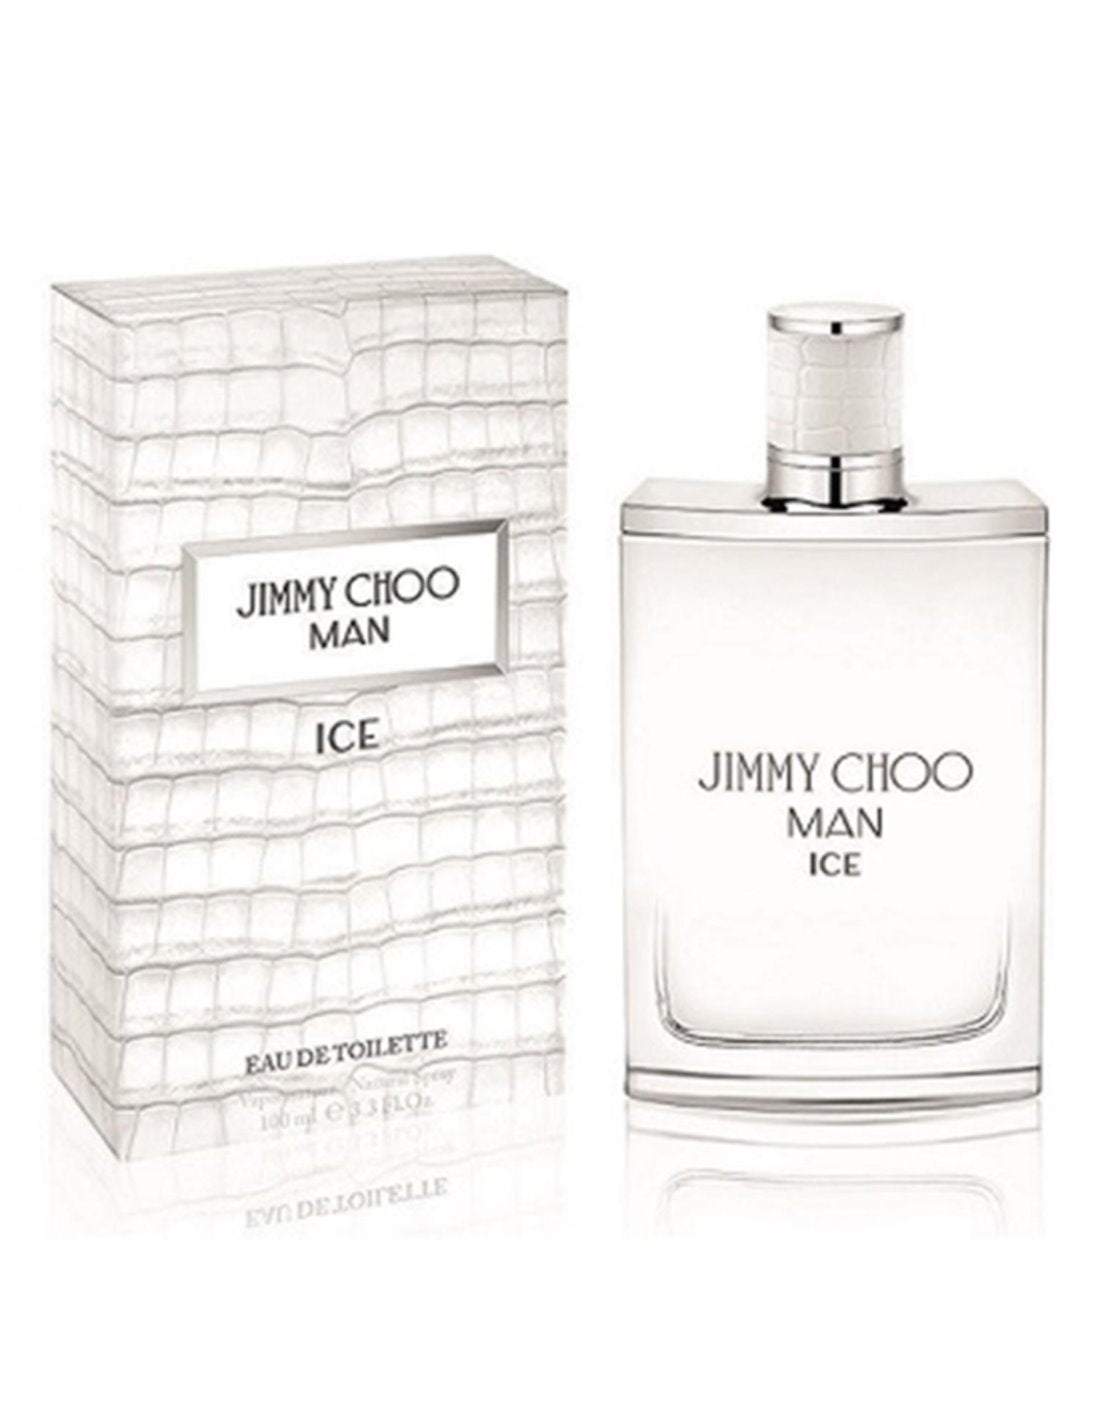 Jimmy Choo Man Ice Eau de Toilette 100ml, 50ml, & 30ml Spray - Peacock Bazaar